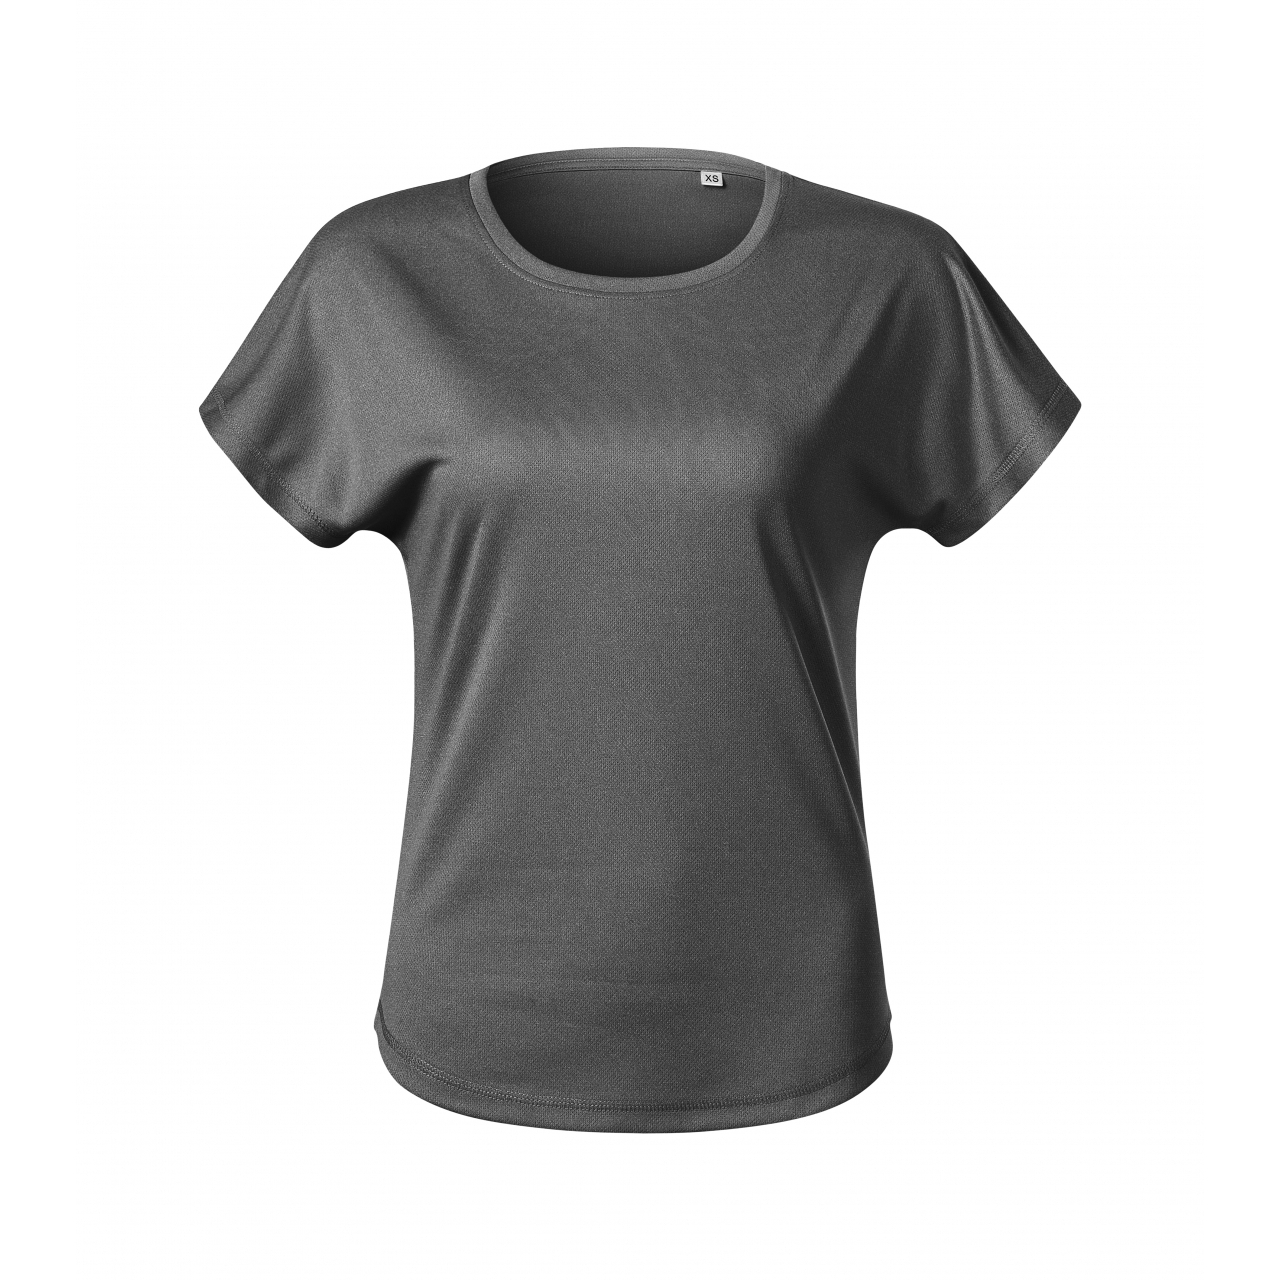 Tričko dámské Malfini Chance - tmavě šedé, XL